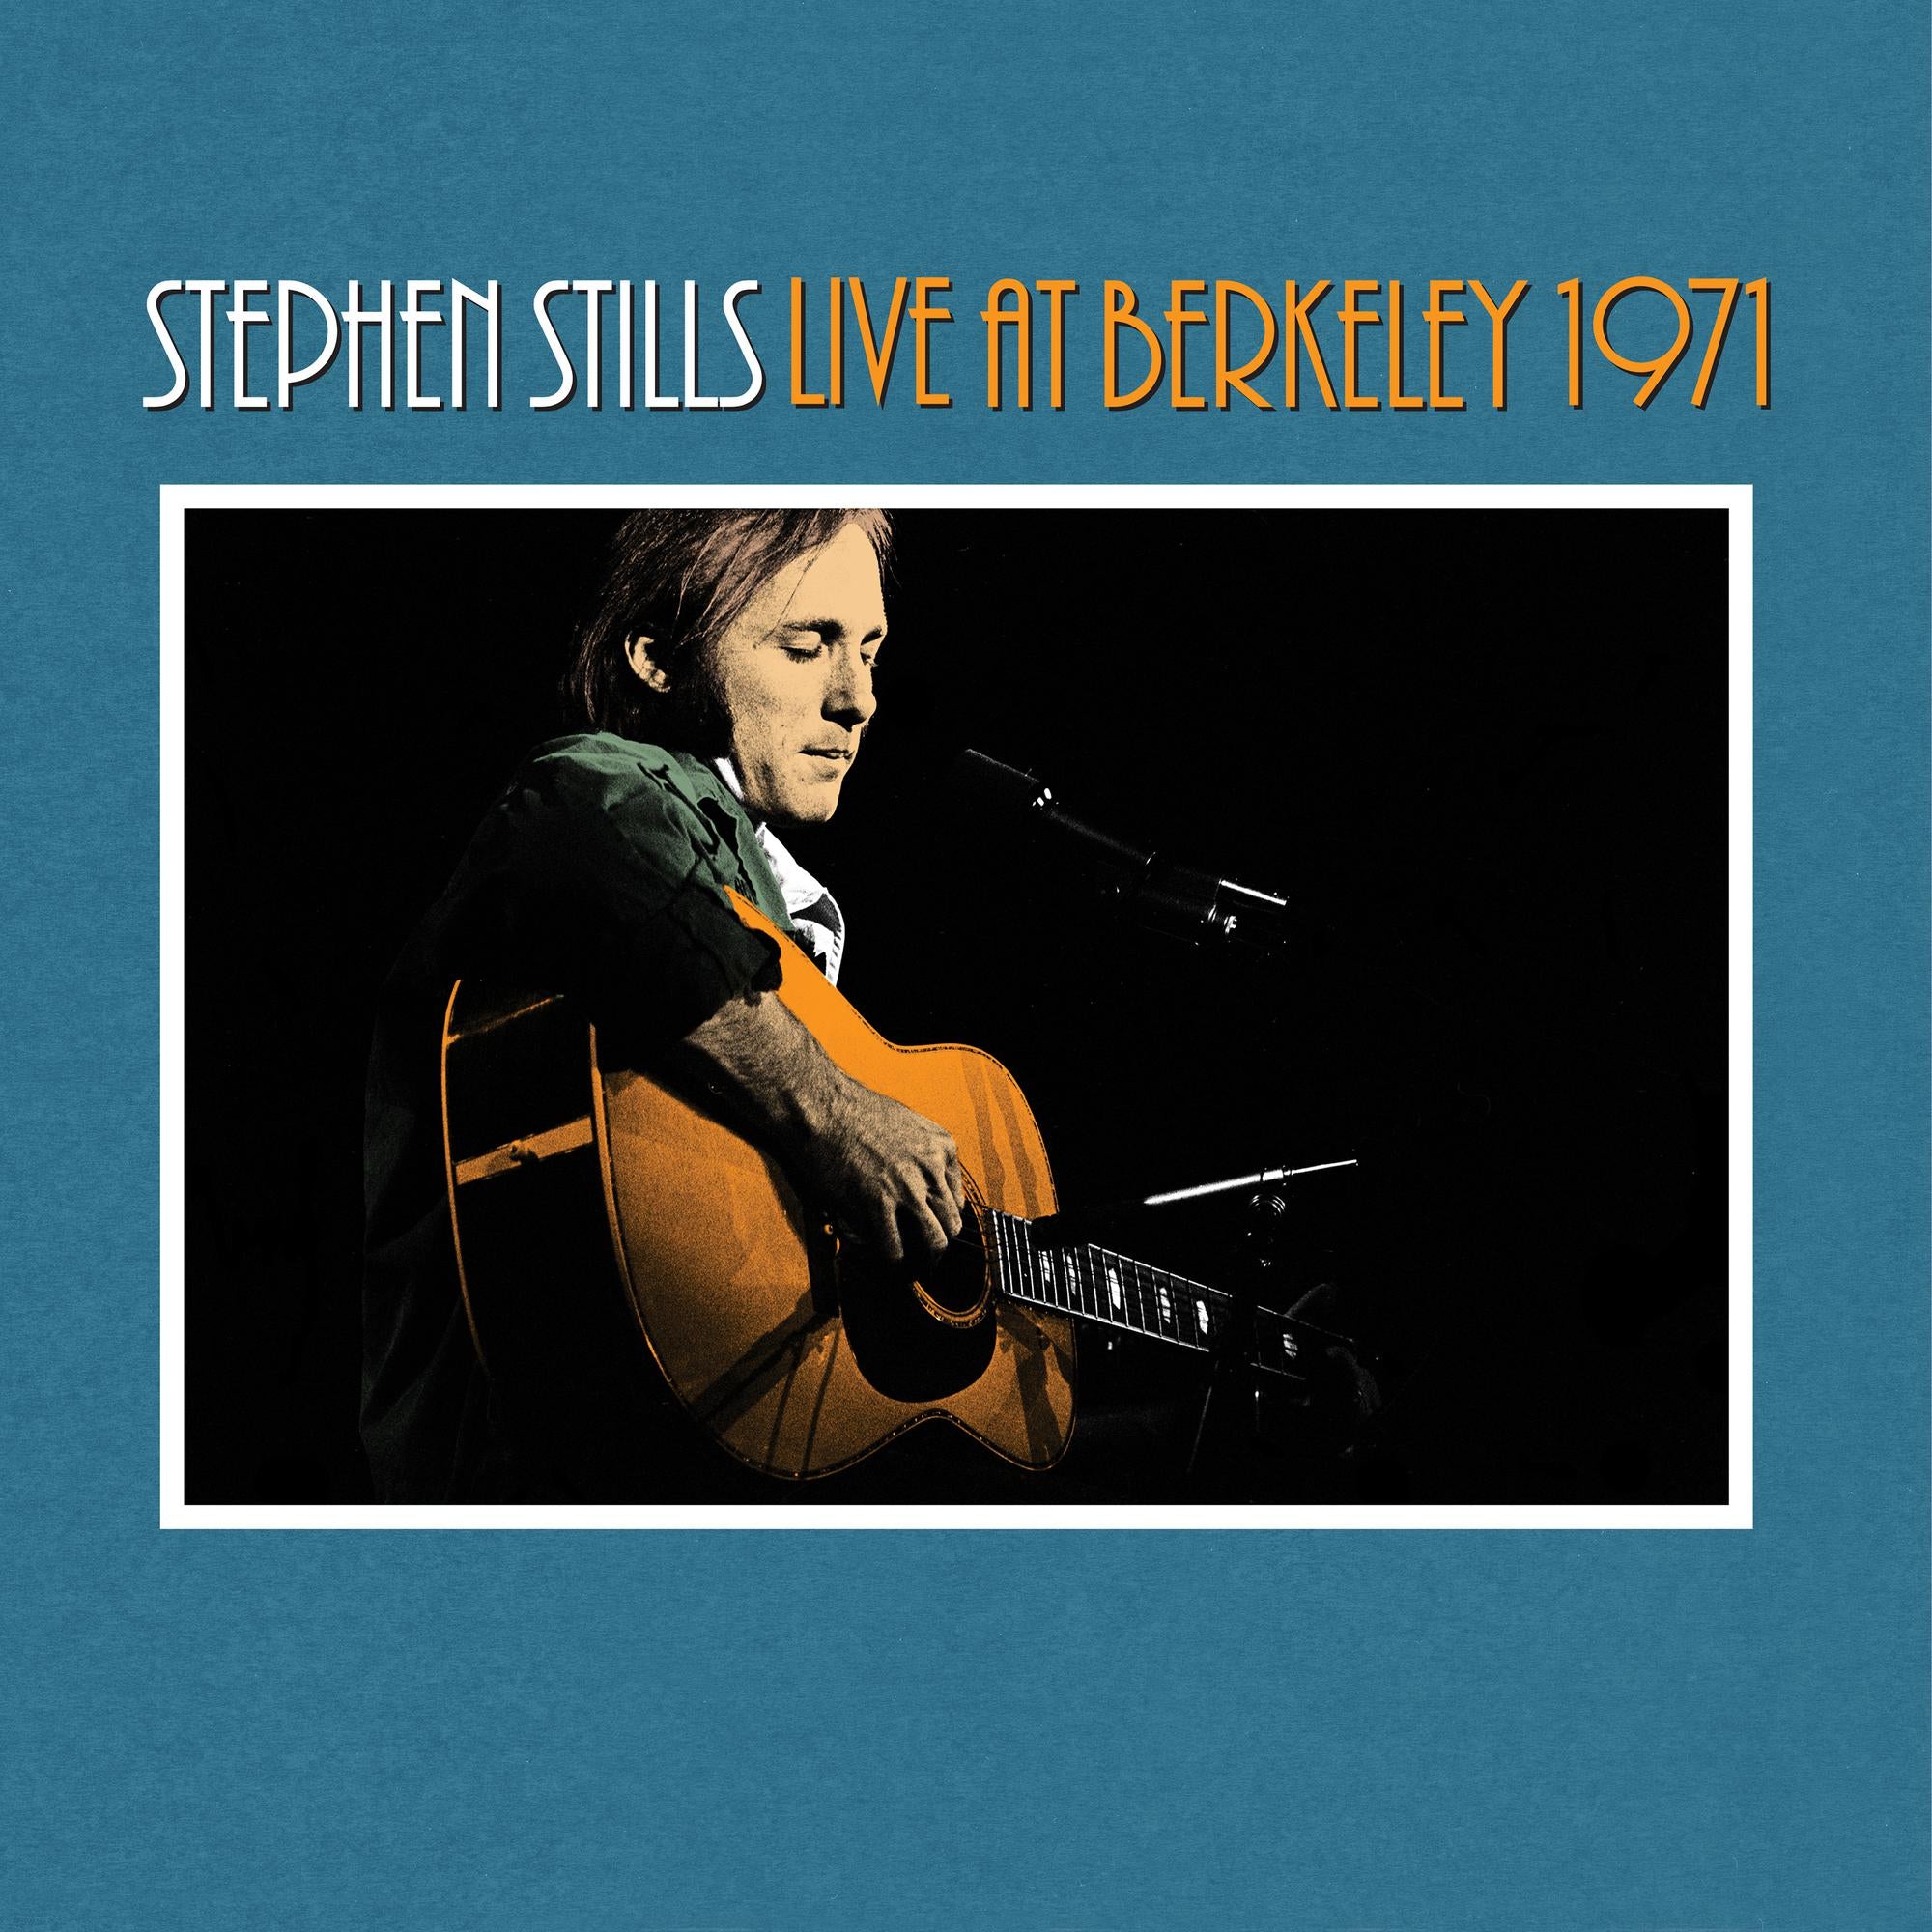 STEPHEN STILLS 'STEPHEN STILLS LIVE AT BERKELEY 1971' 2LP